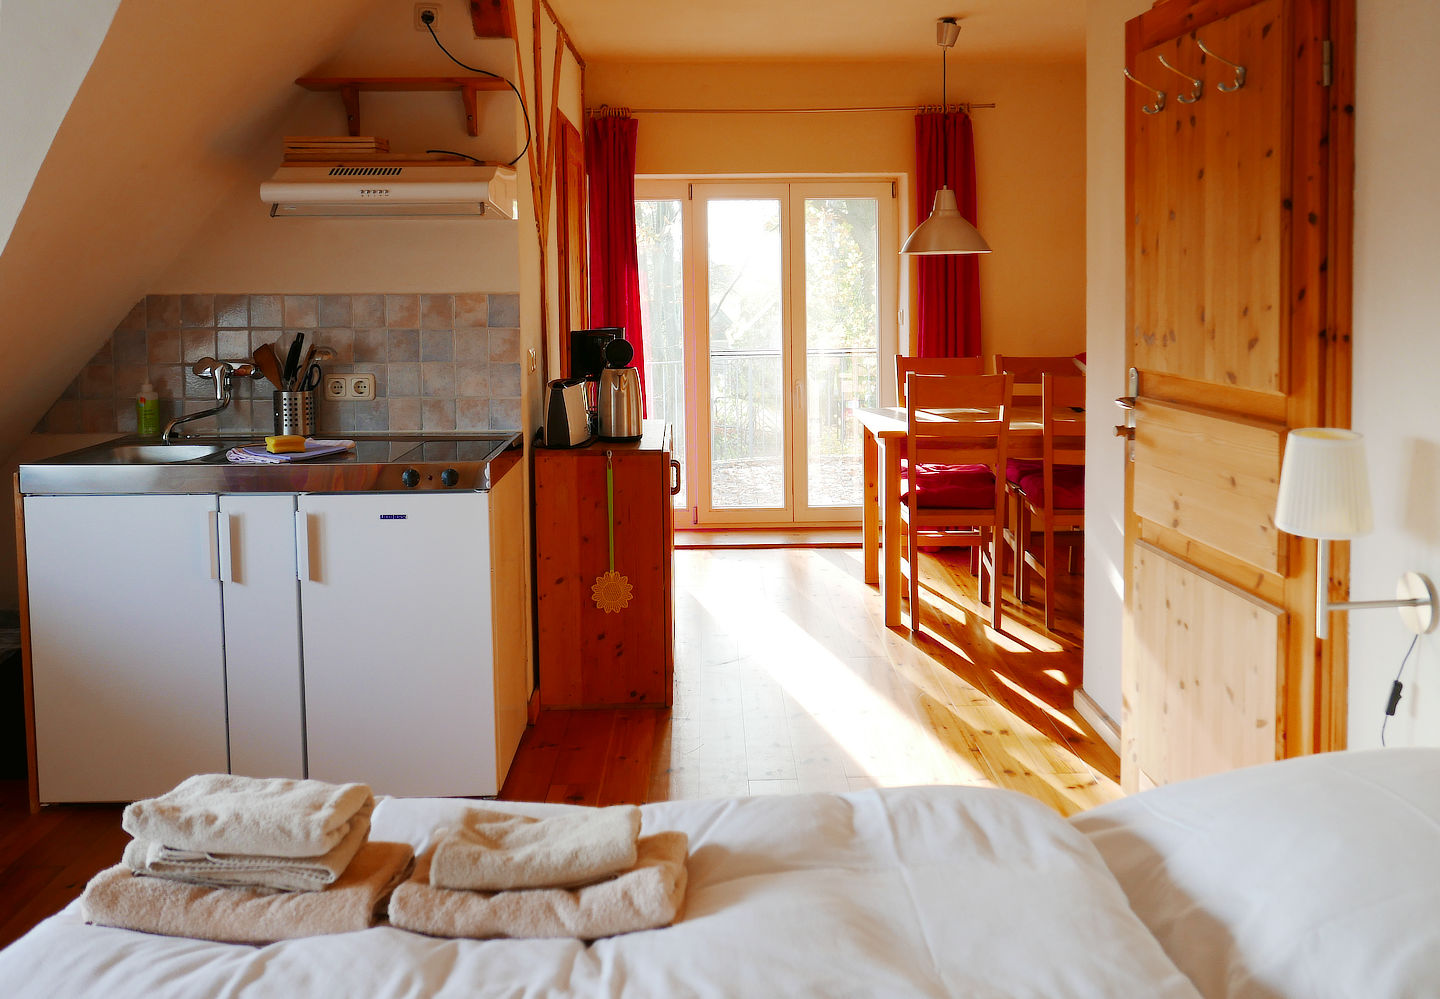 Sonnendurchströmtes 1‑Zimmer Apartment AW 3 mit Doppelbett, Kochnische, Essbereich und Terrasse.